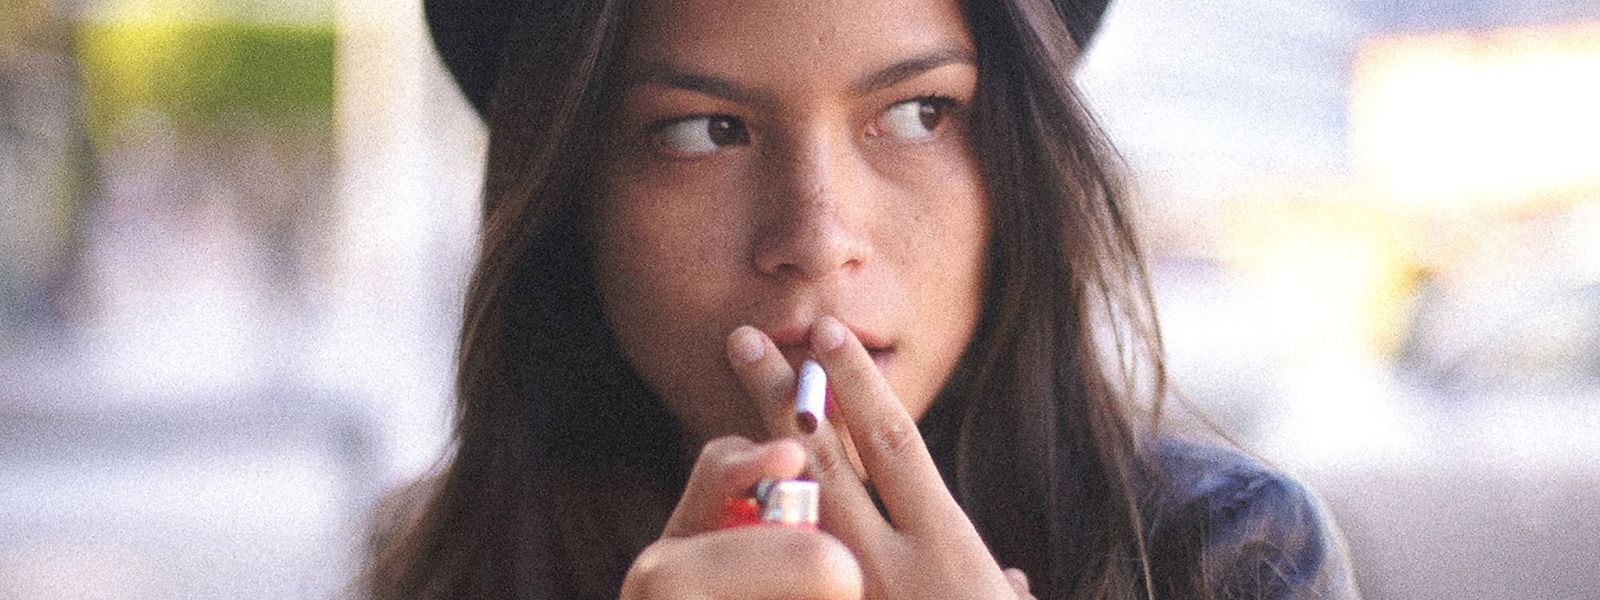 24 Prozent der jungen Frauen zwischen 18 und 24 Jahren rauchen. Damit haben sie die Männer in ihrer Altersklasse inzwischen überholt. 